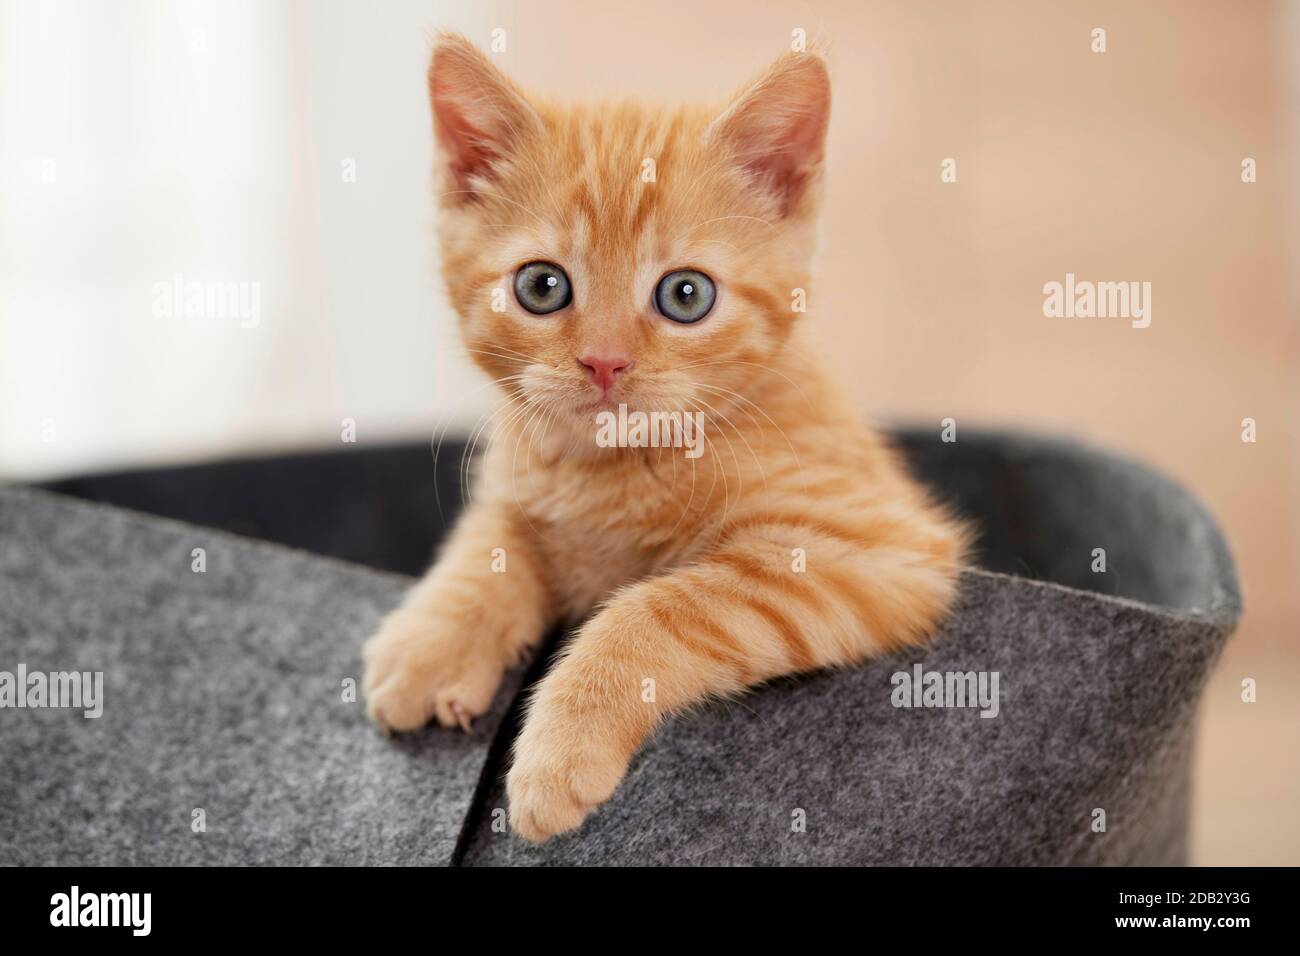 Gato doméstico. Gatito en una cama de mascota. Alemania Foto de stock